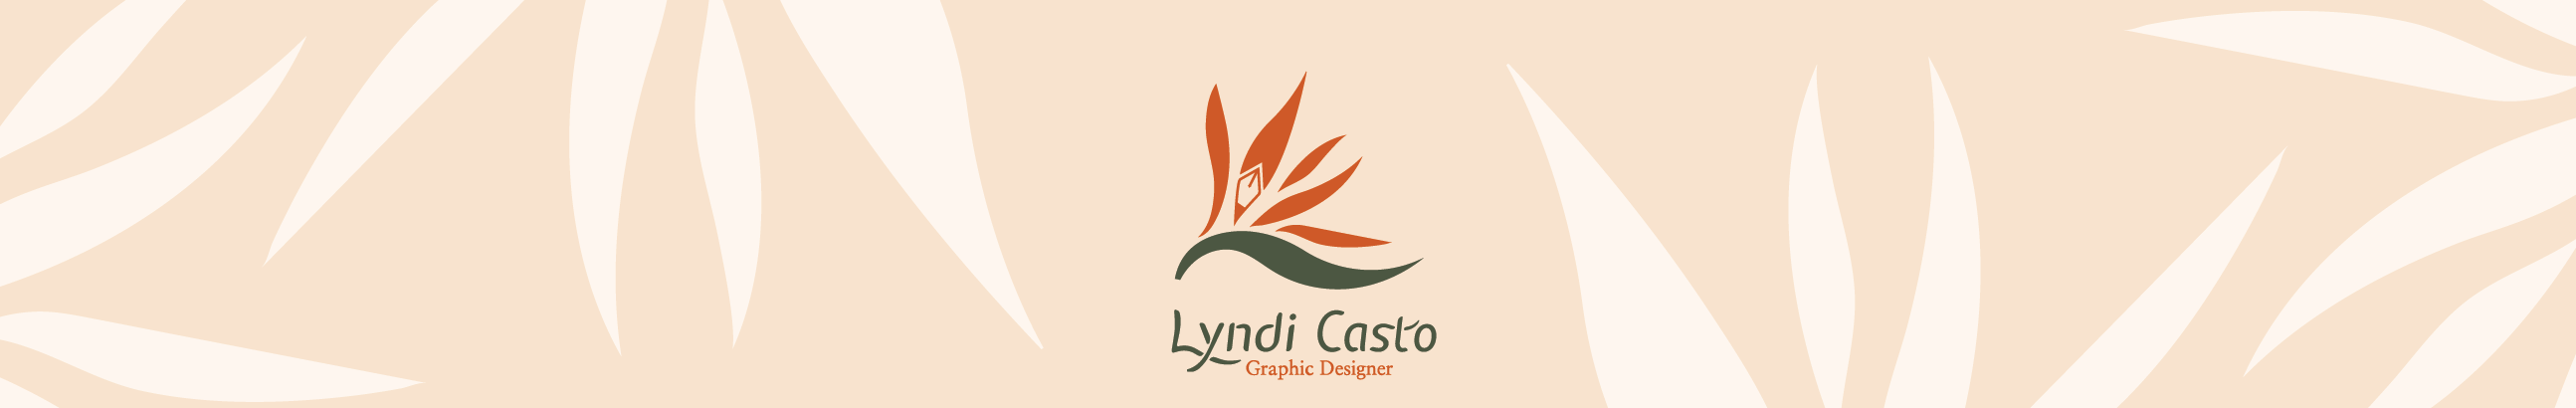 Lyndi Casto's profile banner